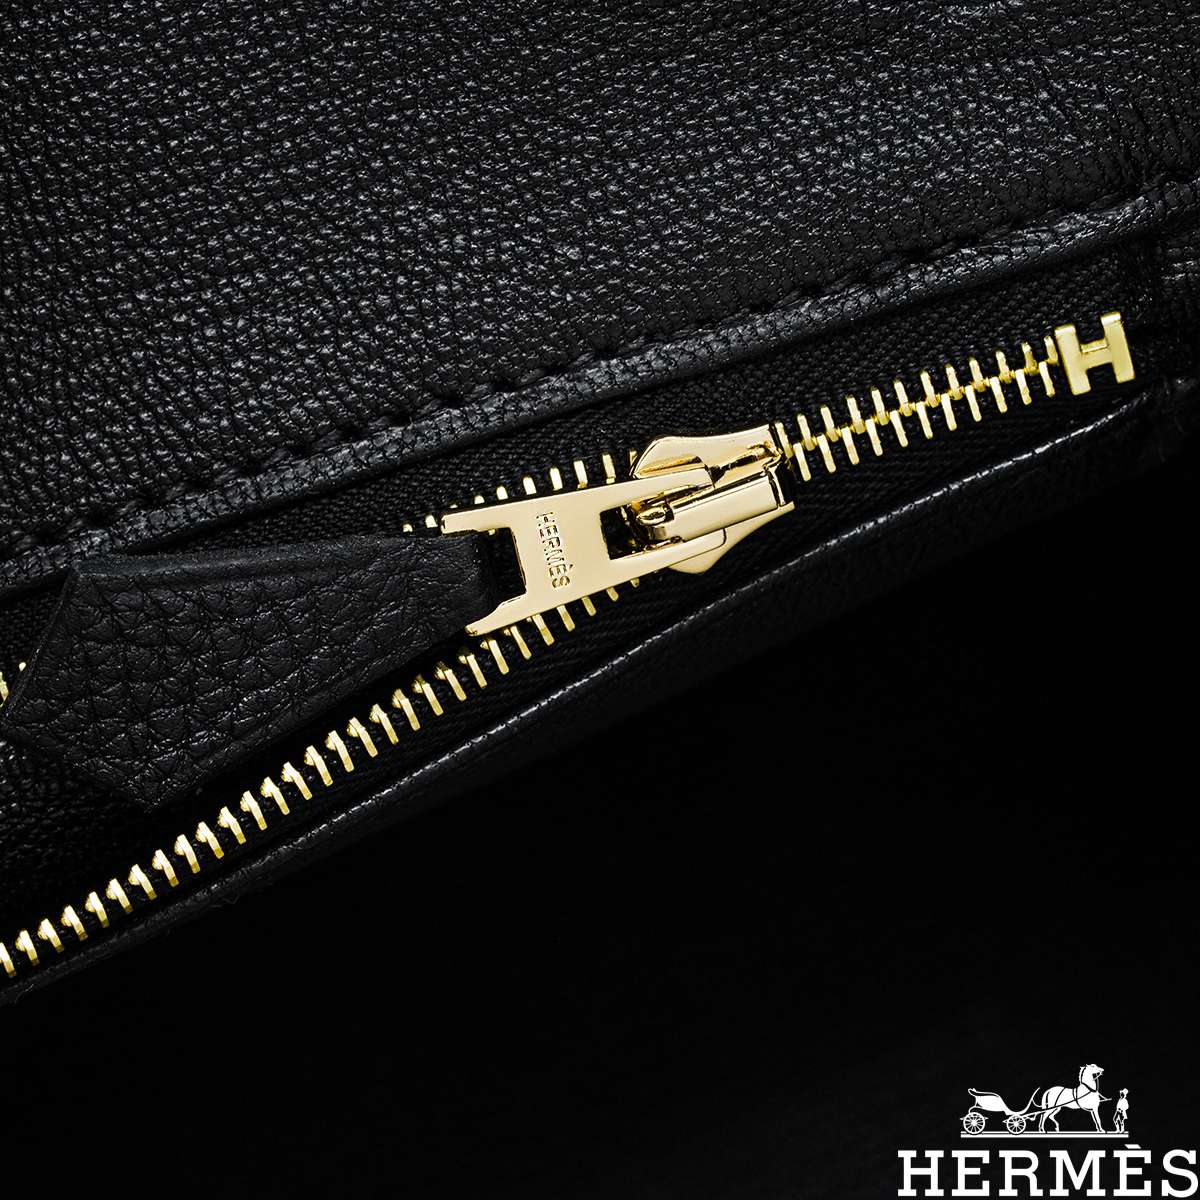 Hermes Birkin 30 Veau Togo Gold, GHW Handbag A-Stamp